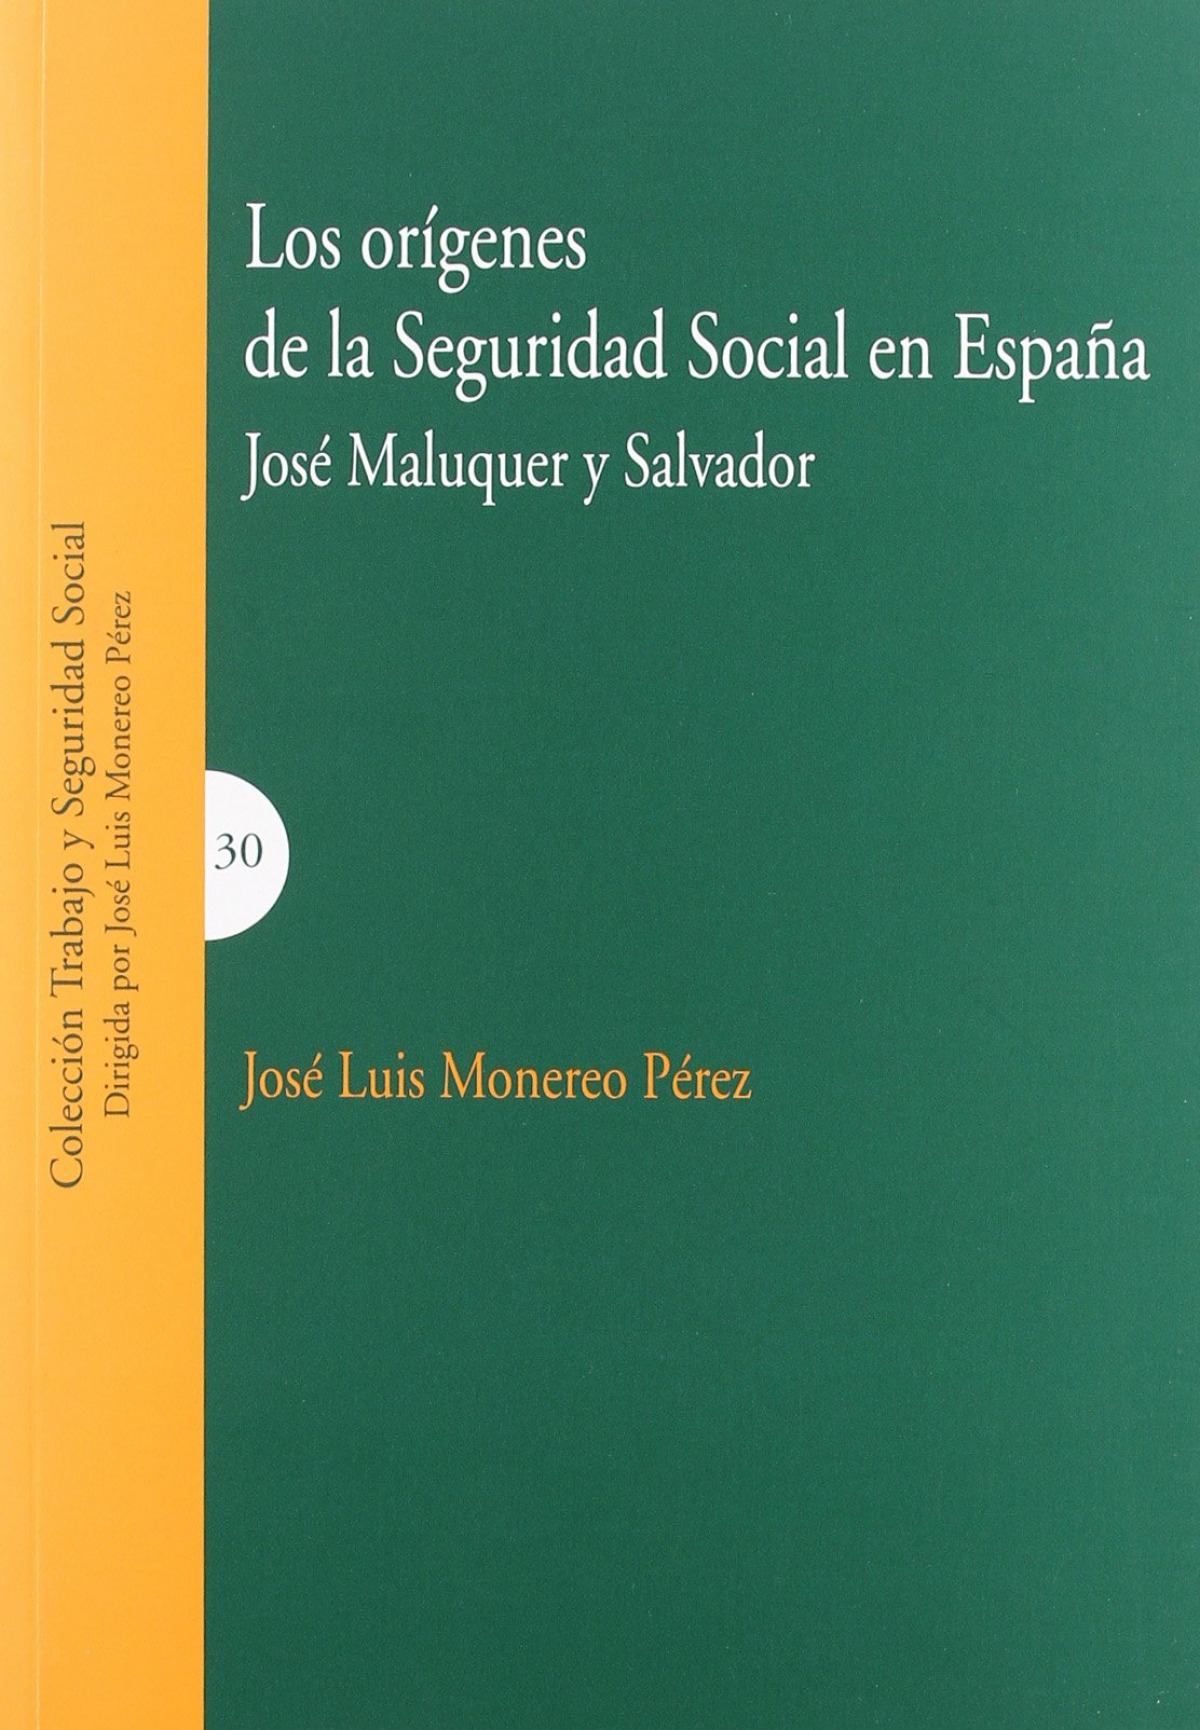 Los origenes de la seguridad social en españa - Maluquer y Salvador, José